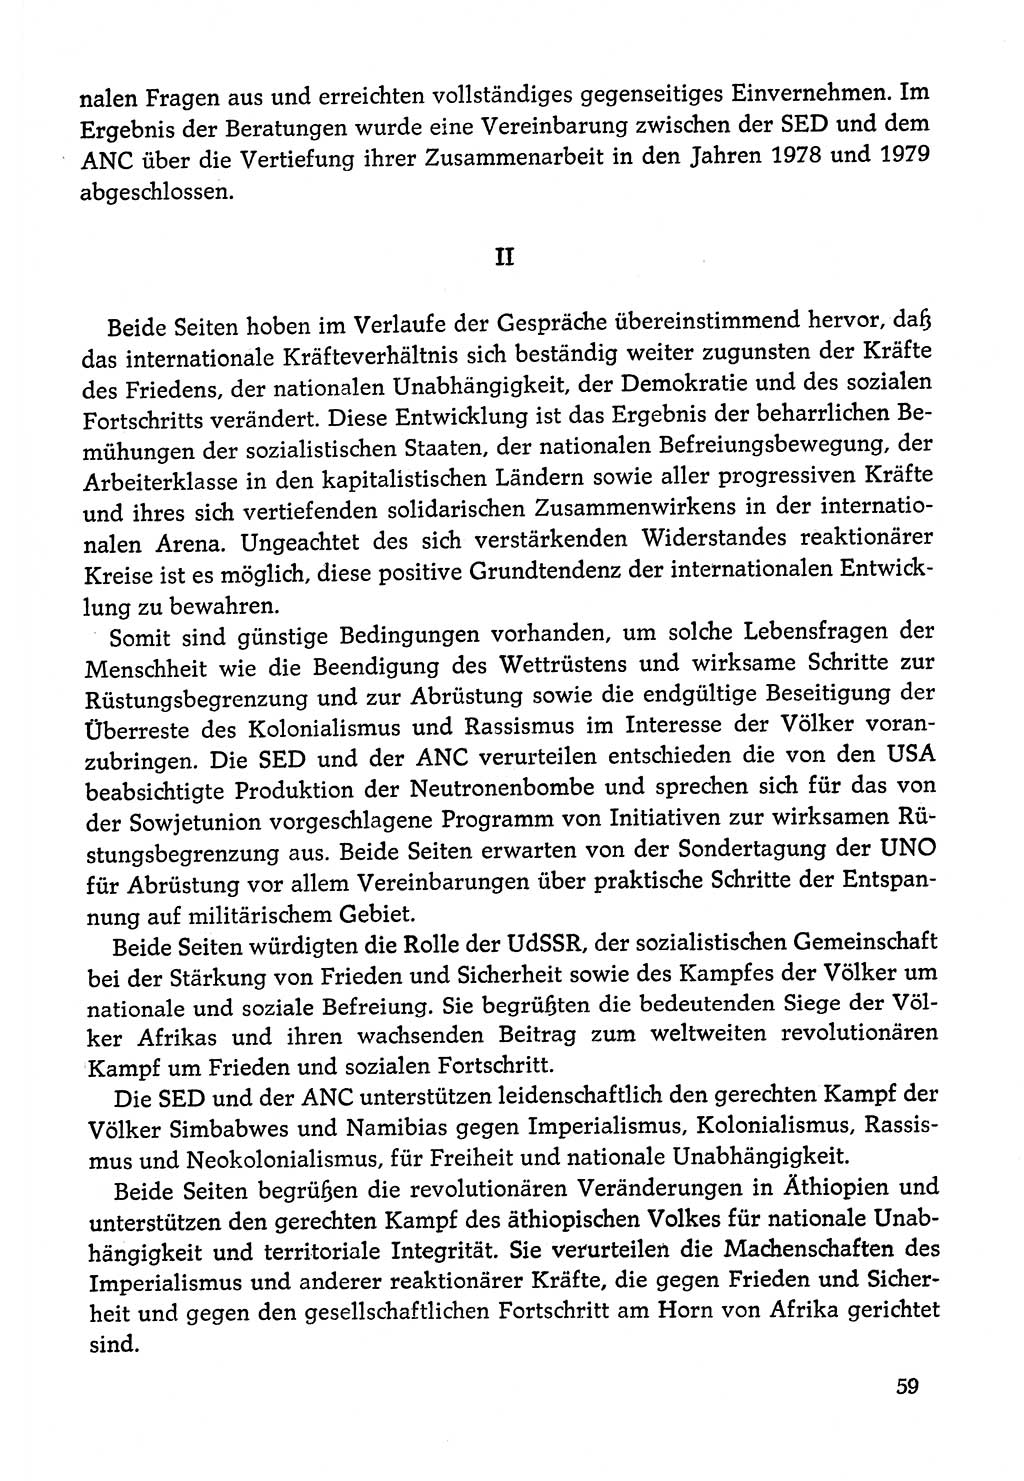 Dokumente der Sozialistischen Einheitspartei Deutschlands (SED) [Deutsche Demokratische Republik (DDR)] 1978-1979, Seite 59 (Dok. SED DDR 1978-1979, S. 59)